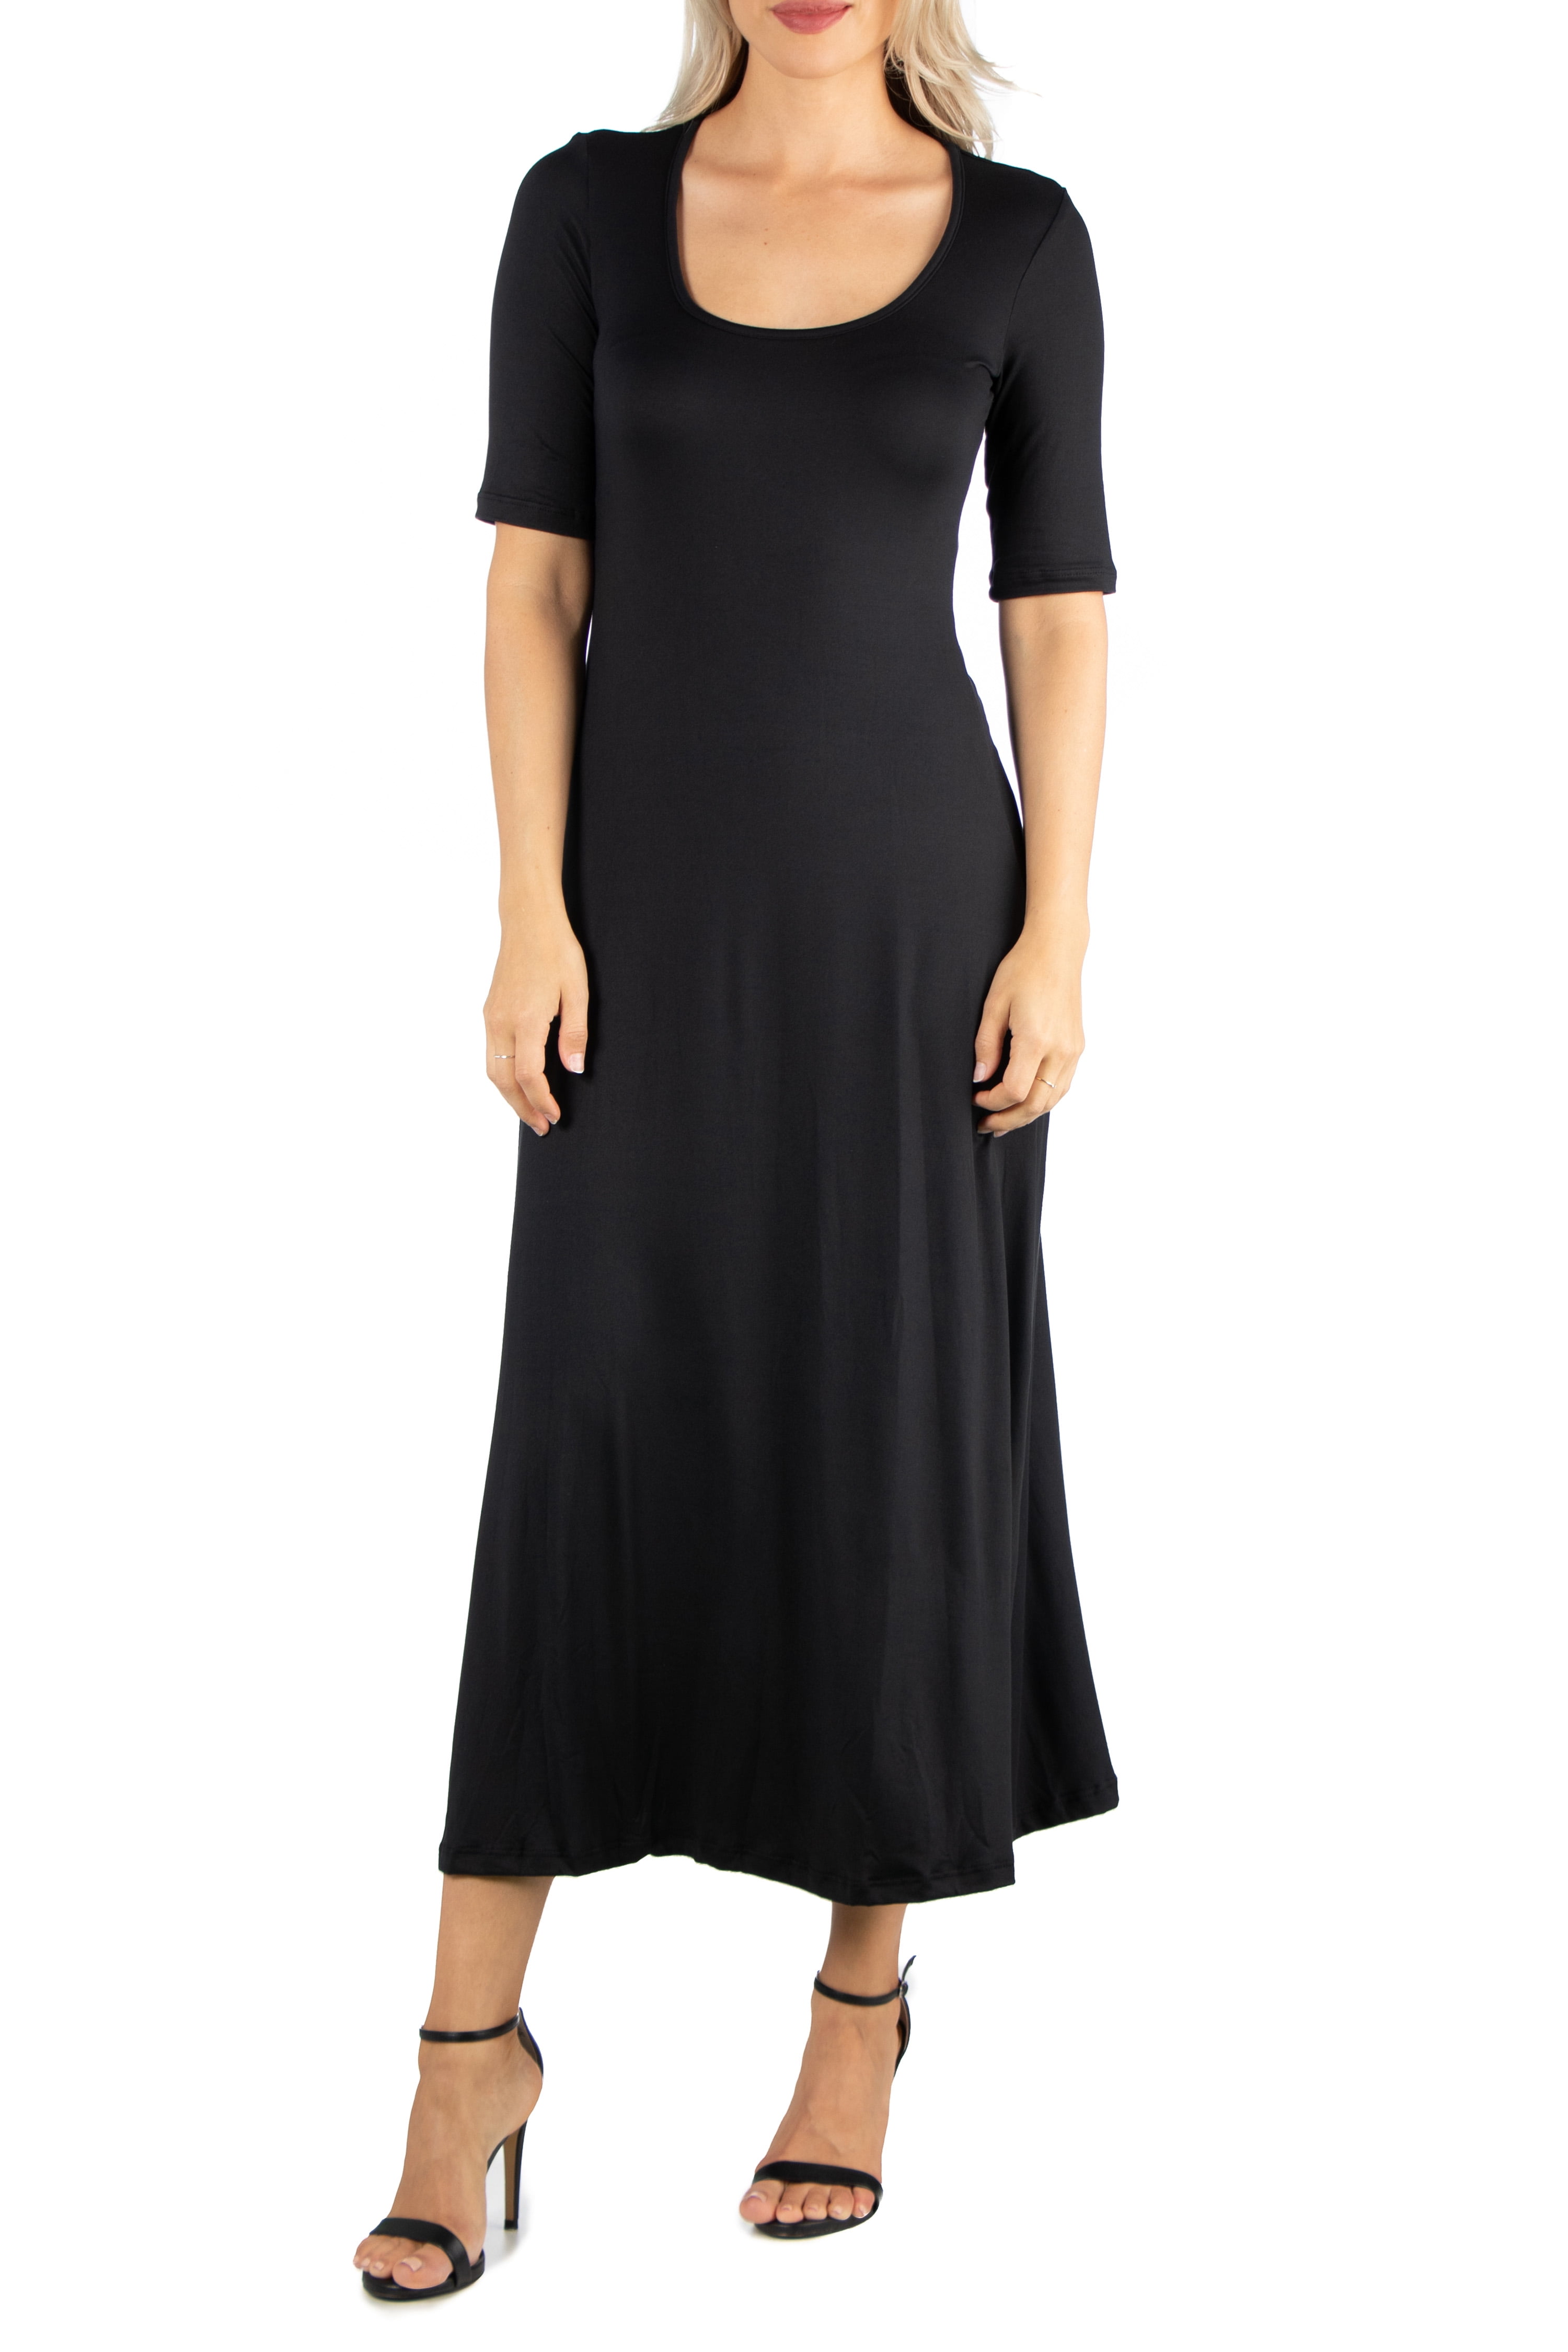 24/7 Comfort Apparel Women's Casual Maxi Dress - Walmart.com